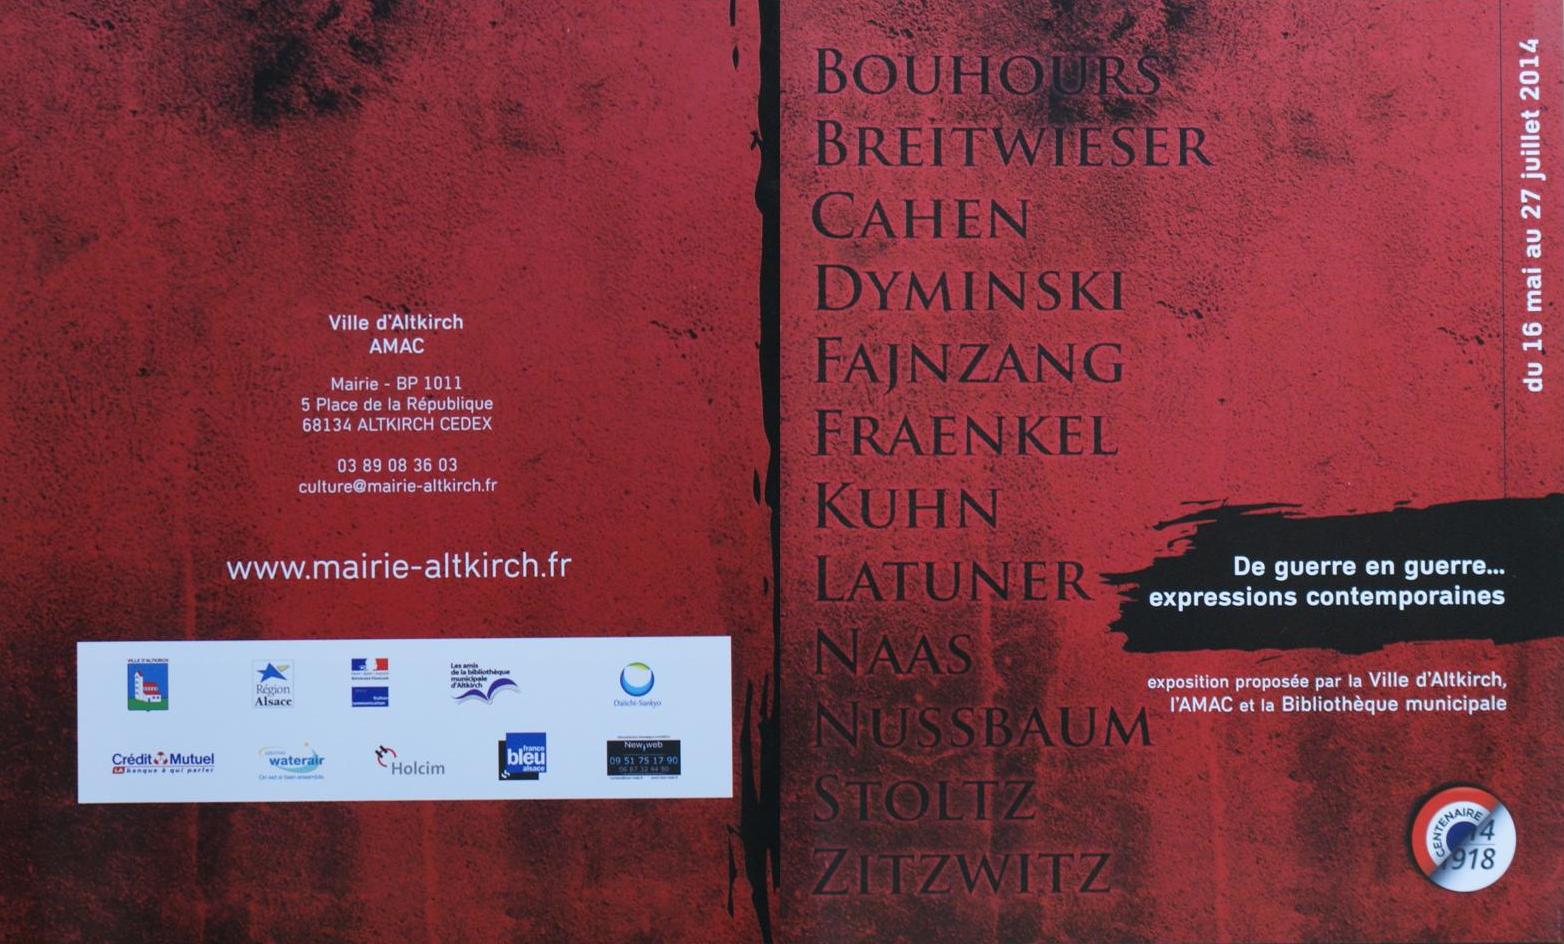 Couverture catalogue Altkirch